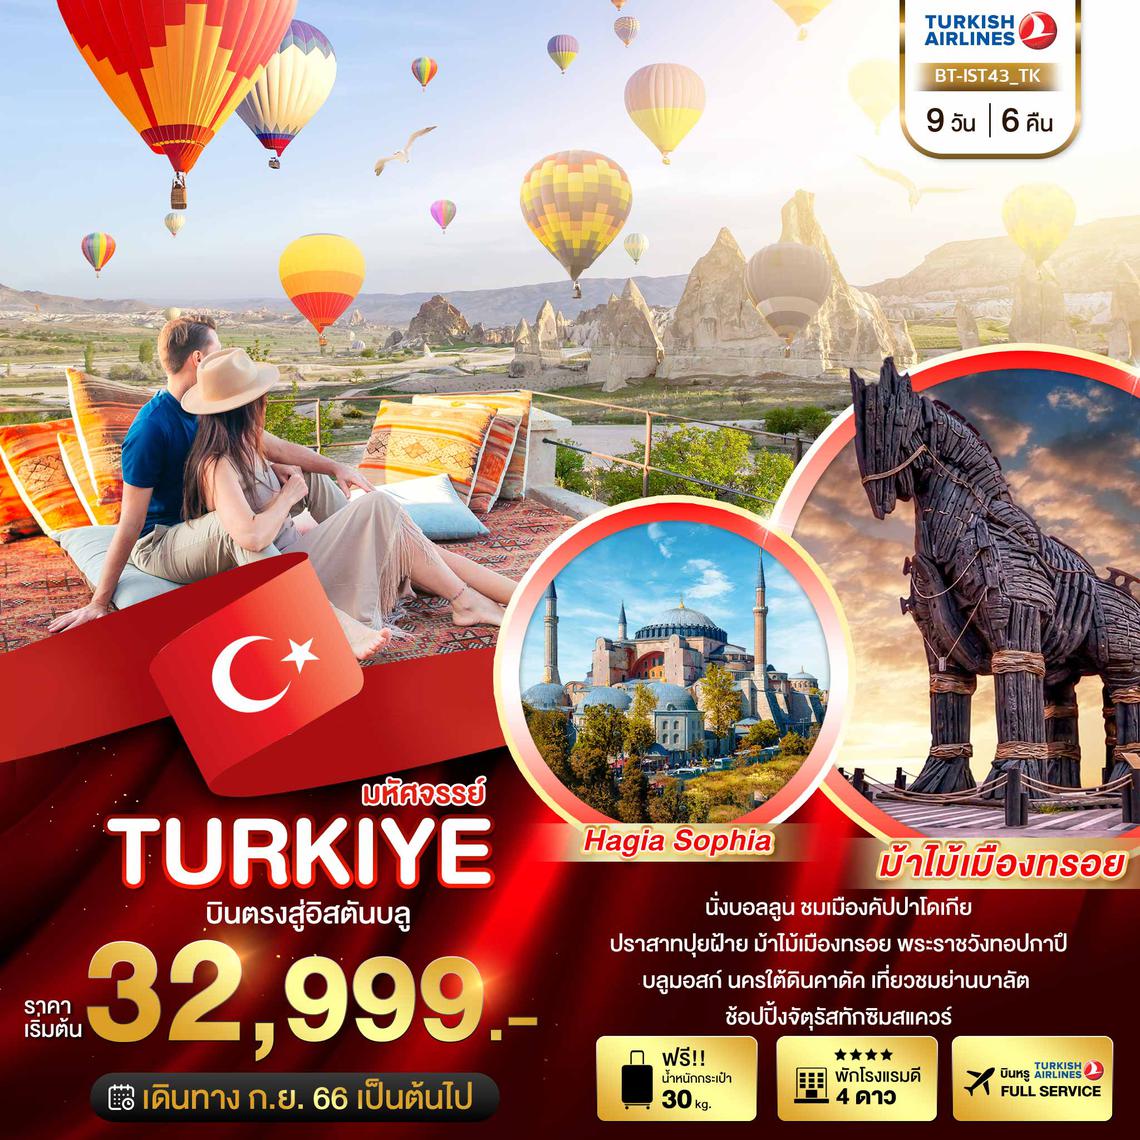 ทัวร์ตุรกี มหัศจรรย์..TURKIYE บินตรงสู่อิสตันบูล 9 วัน 6 คืน